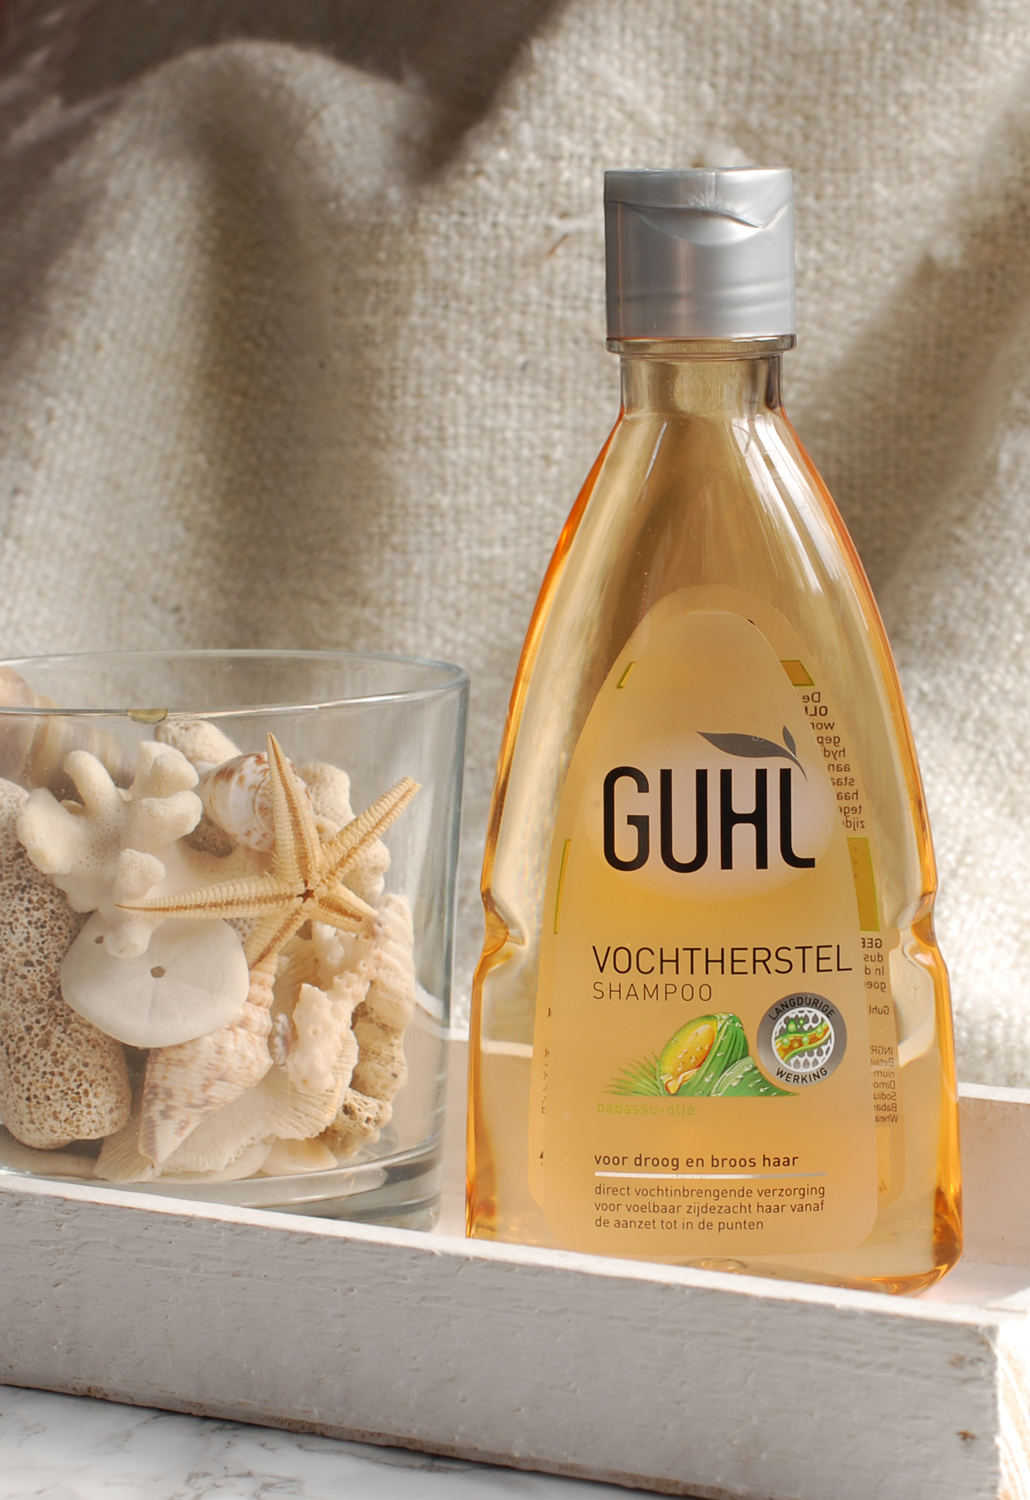 Guhl Vochtherstel haarlijn shampoo conditoiner crèmespoeling Daily Moisture Spray review